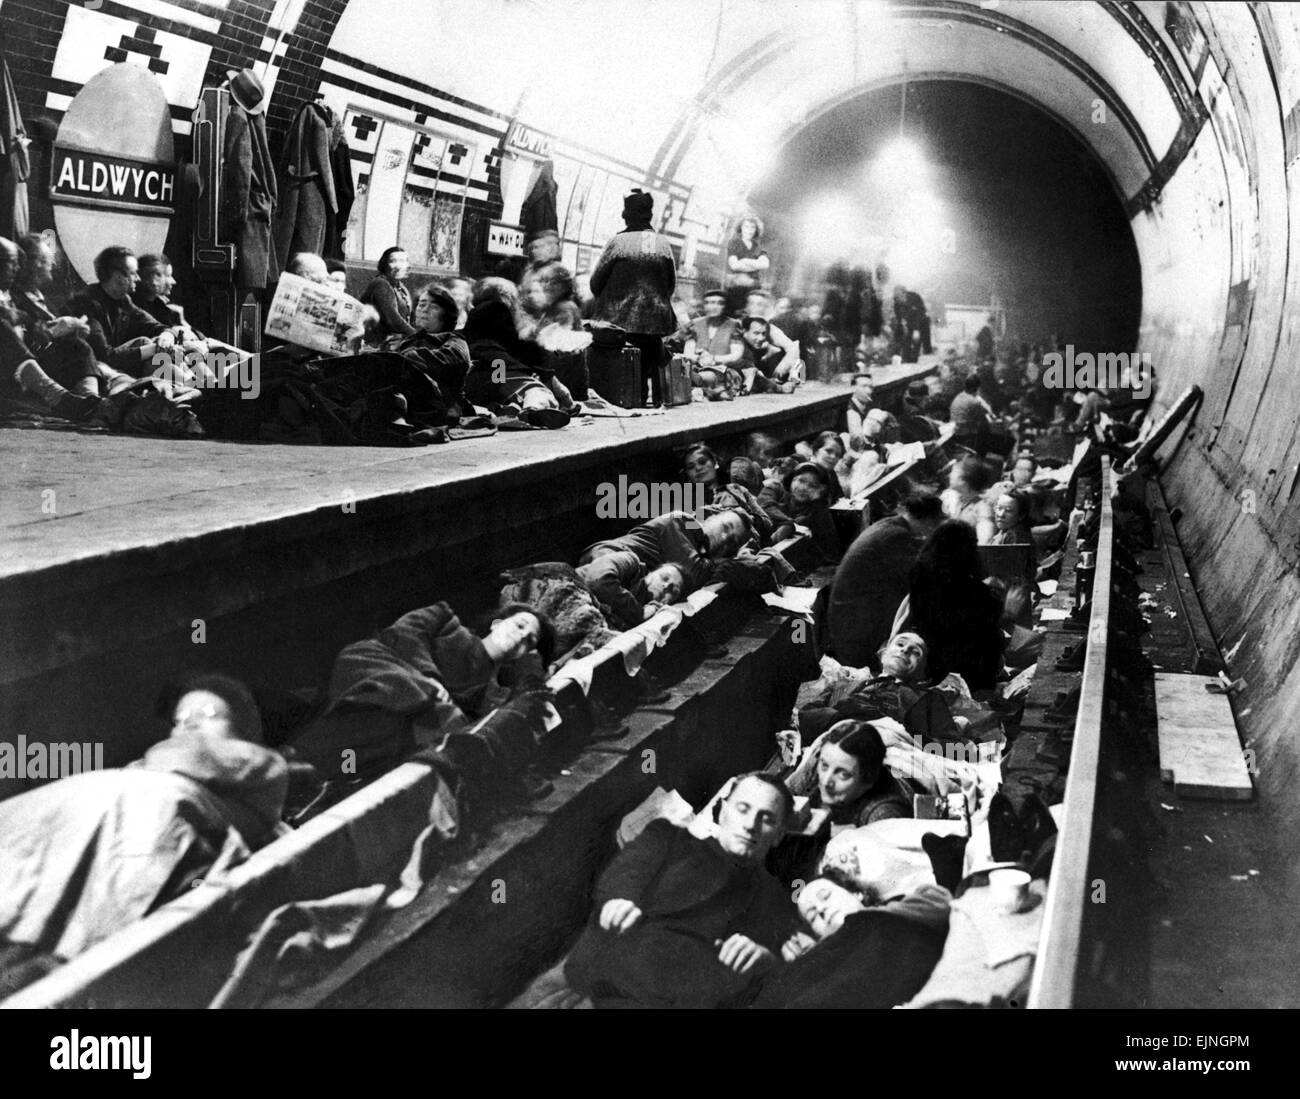 La station de métro Aldwych London à utiliser comme un abri anti-aérien lors des attaques à la bombe sur Londres PENDANT LA SECONDE GUERRE MONDIALE vers 1941. Banque D'Images